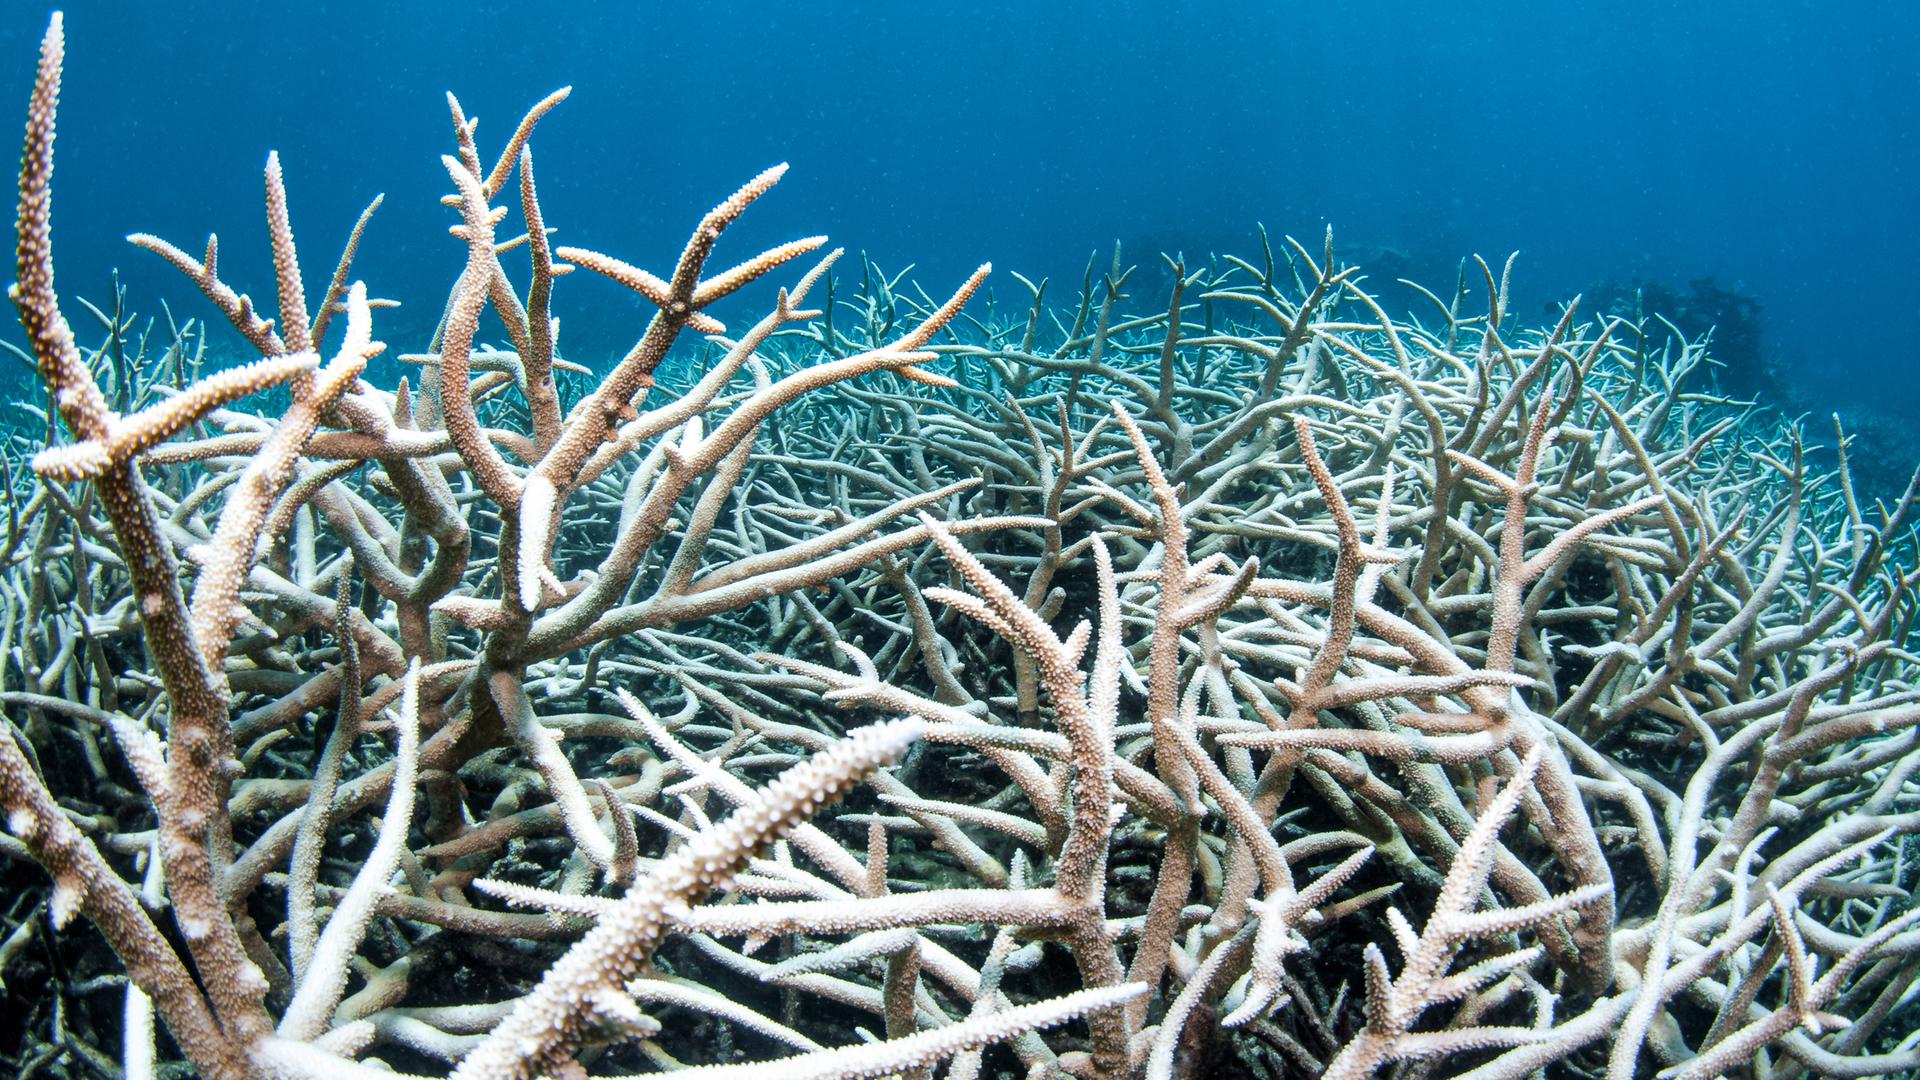 Korallenbleiche im Atlantik, die Korallen werden weiß und sterben ab.